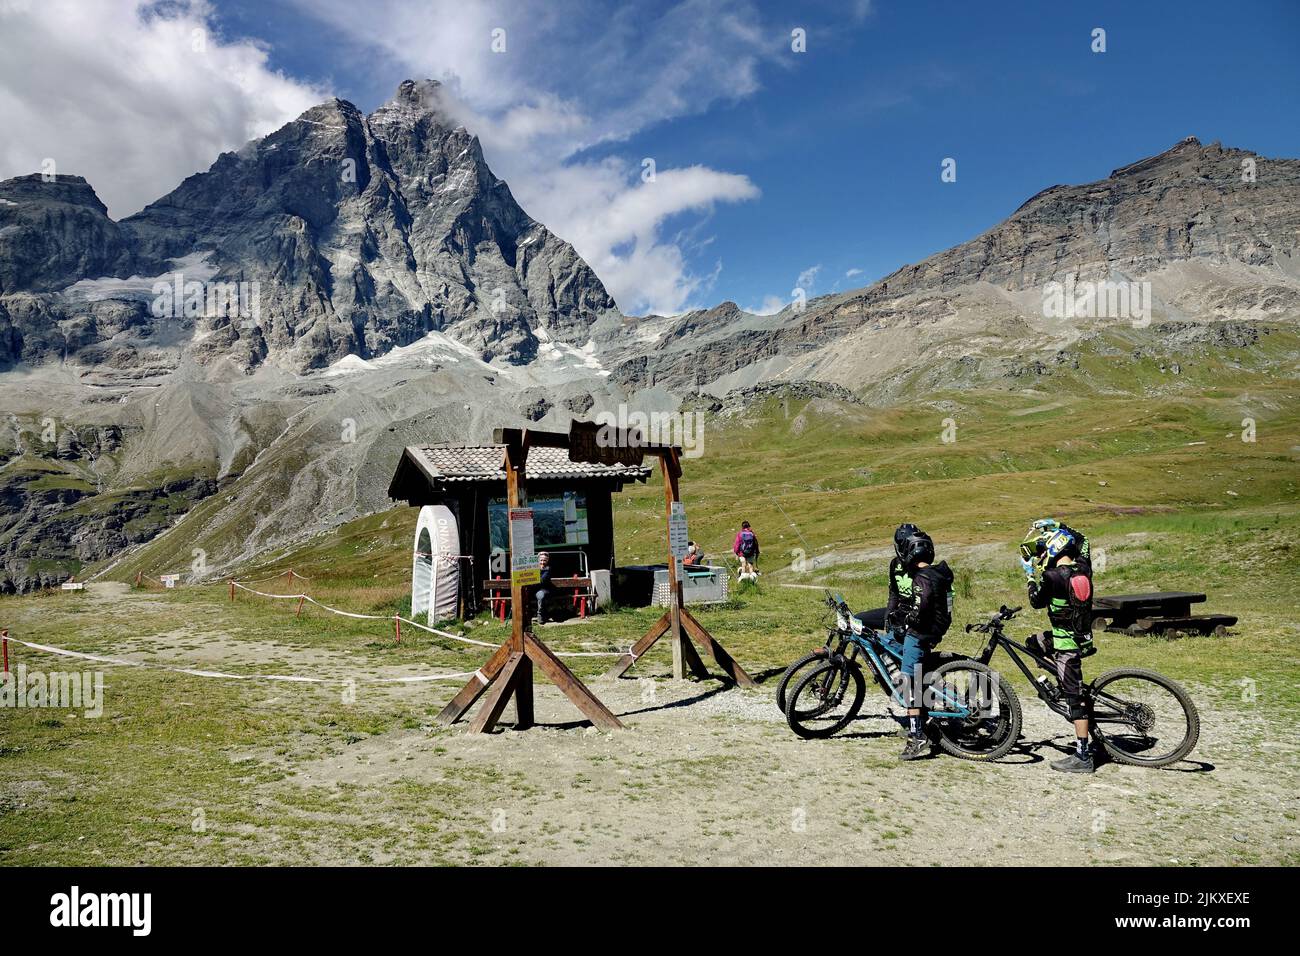 El parque de bicicletas Matterhorn Valley es el más alto de Europa y tiene pendientes con todos los niveles de dificultad. Breuil-Cervinia, Italia - Agosto 2022 Foto de stock